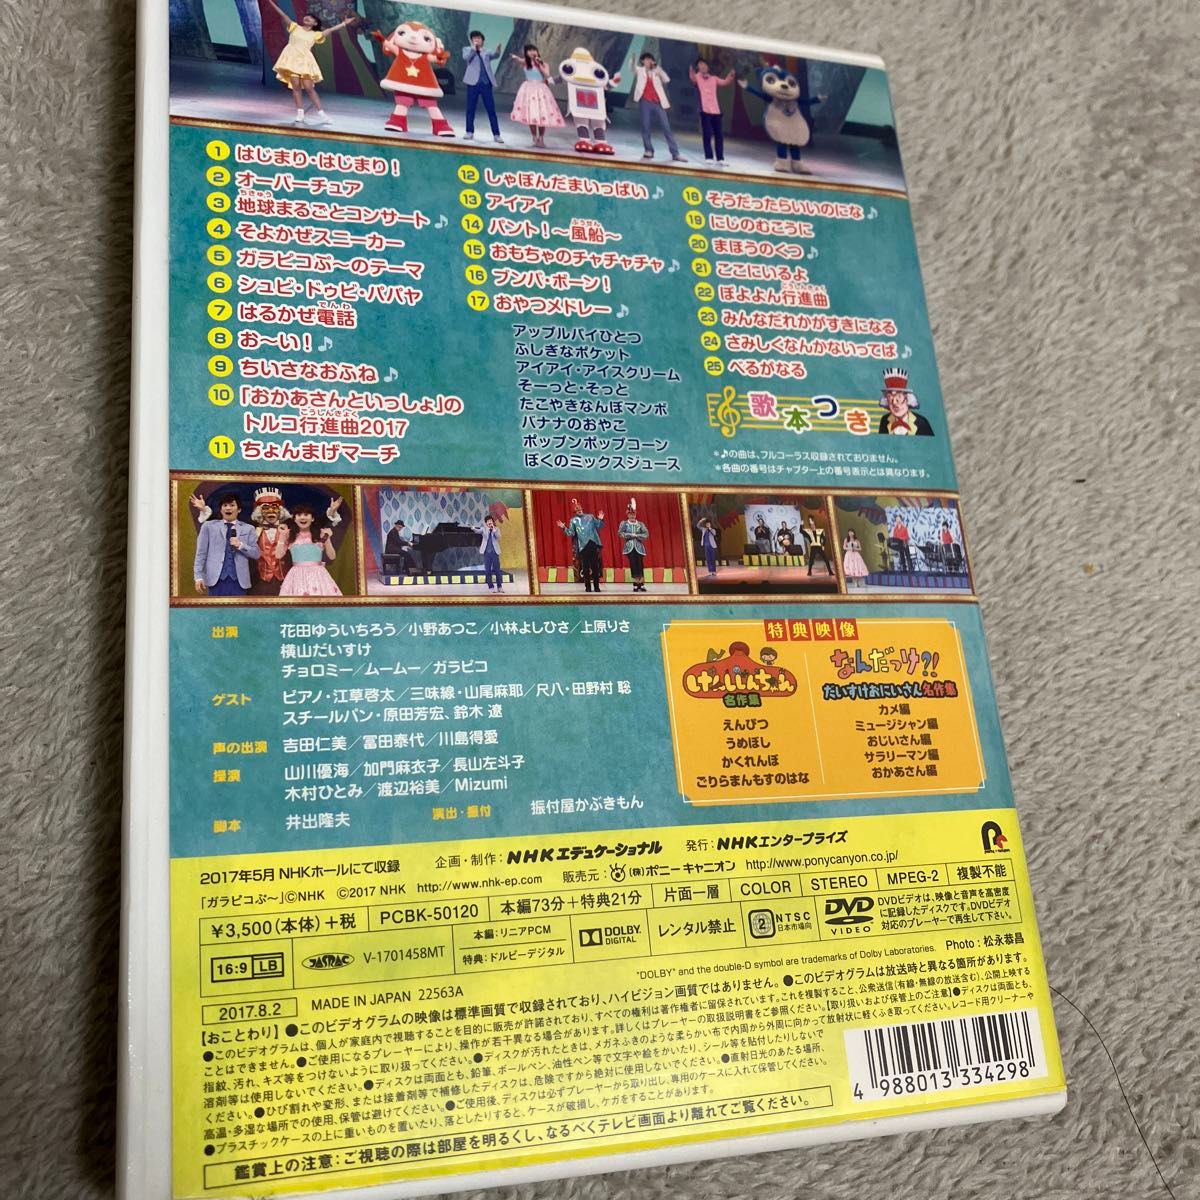 NHK 「おかあさんといっしょ」 ファミリーコンサート 音楽博士のうららかコンサート [DVD]